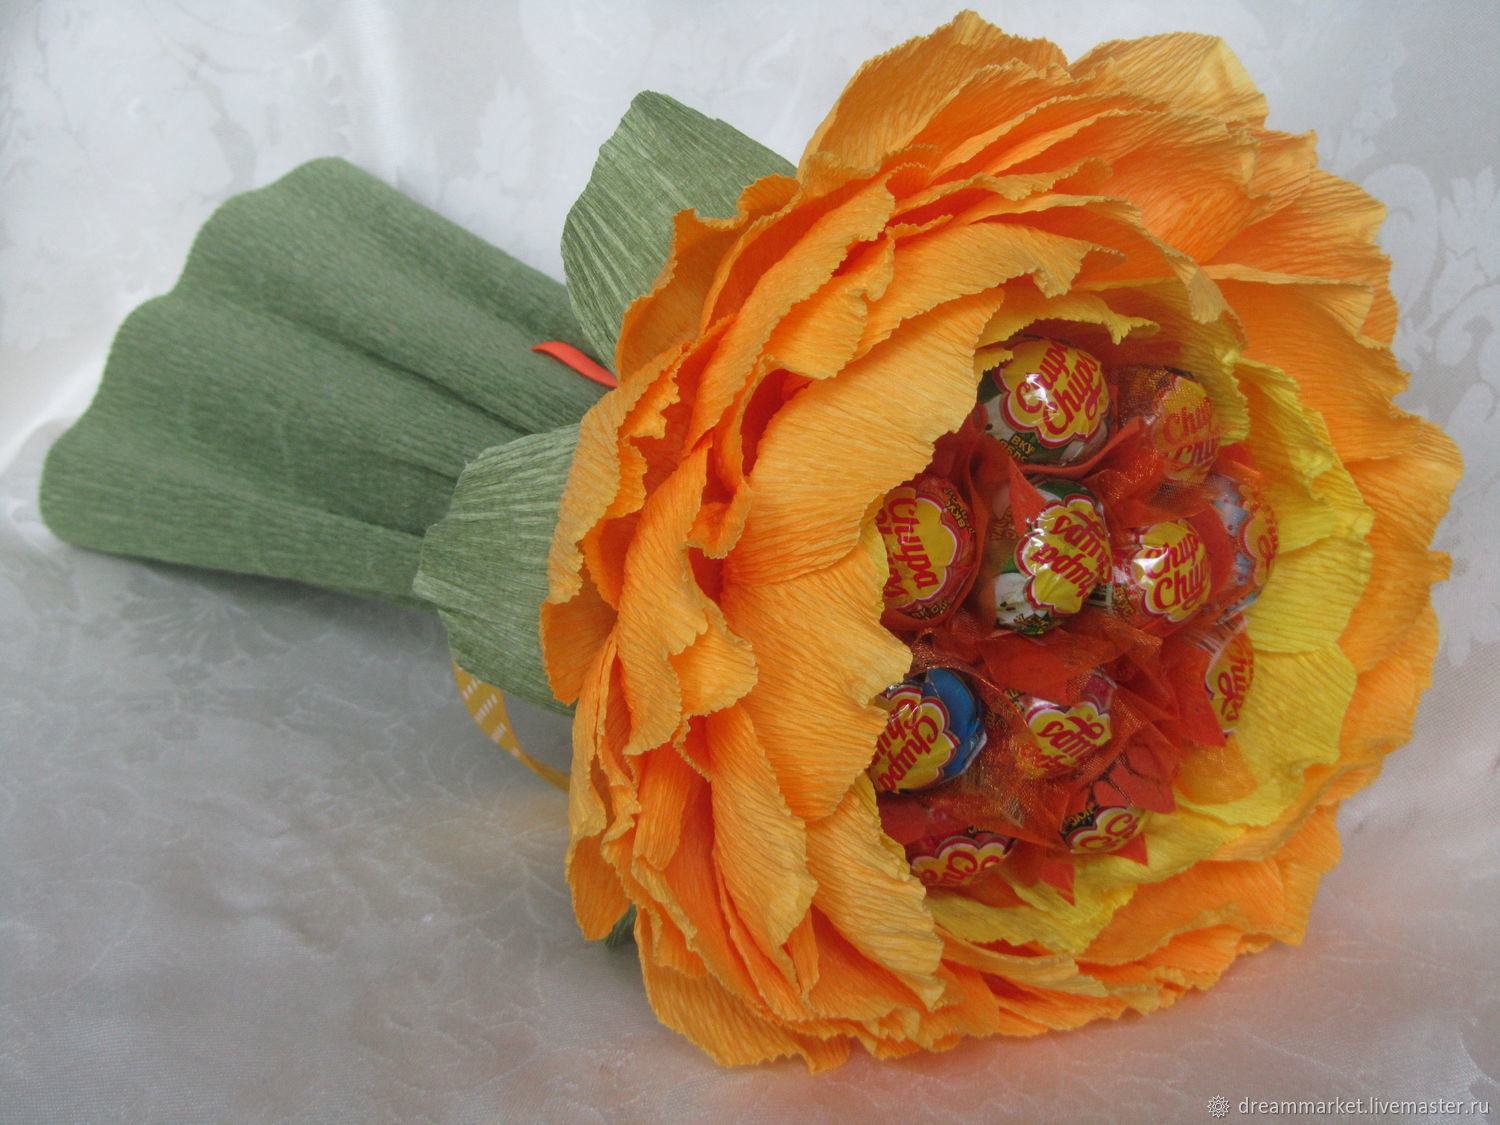 Поделки из конфет и гофробумаги: цветы из конфет и гофрированной бумаги Цветы из гофрированной бумаги своими руками с конфетами #yandexim…